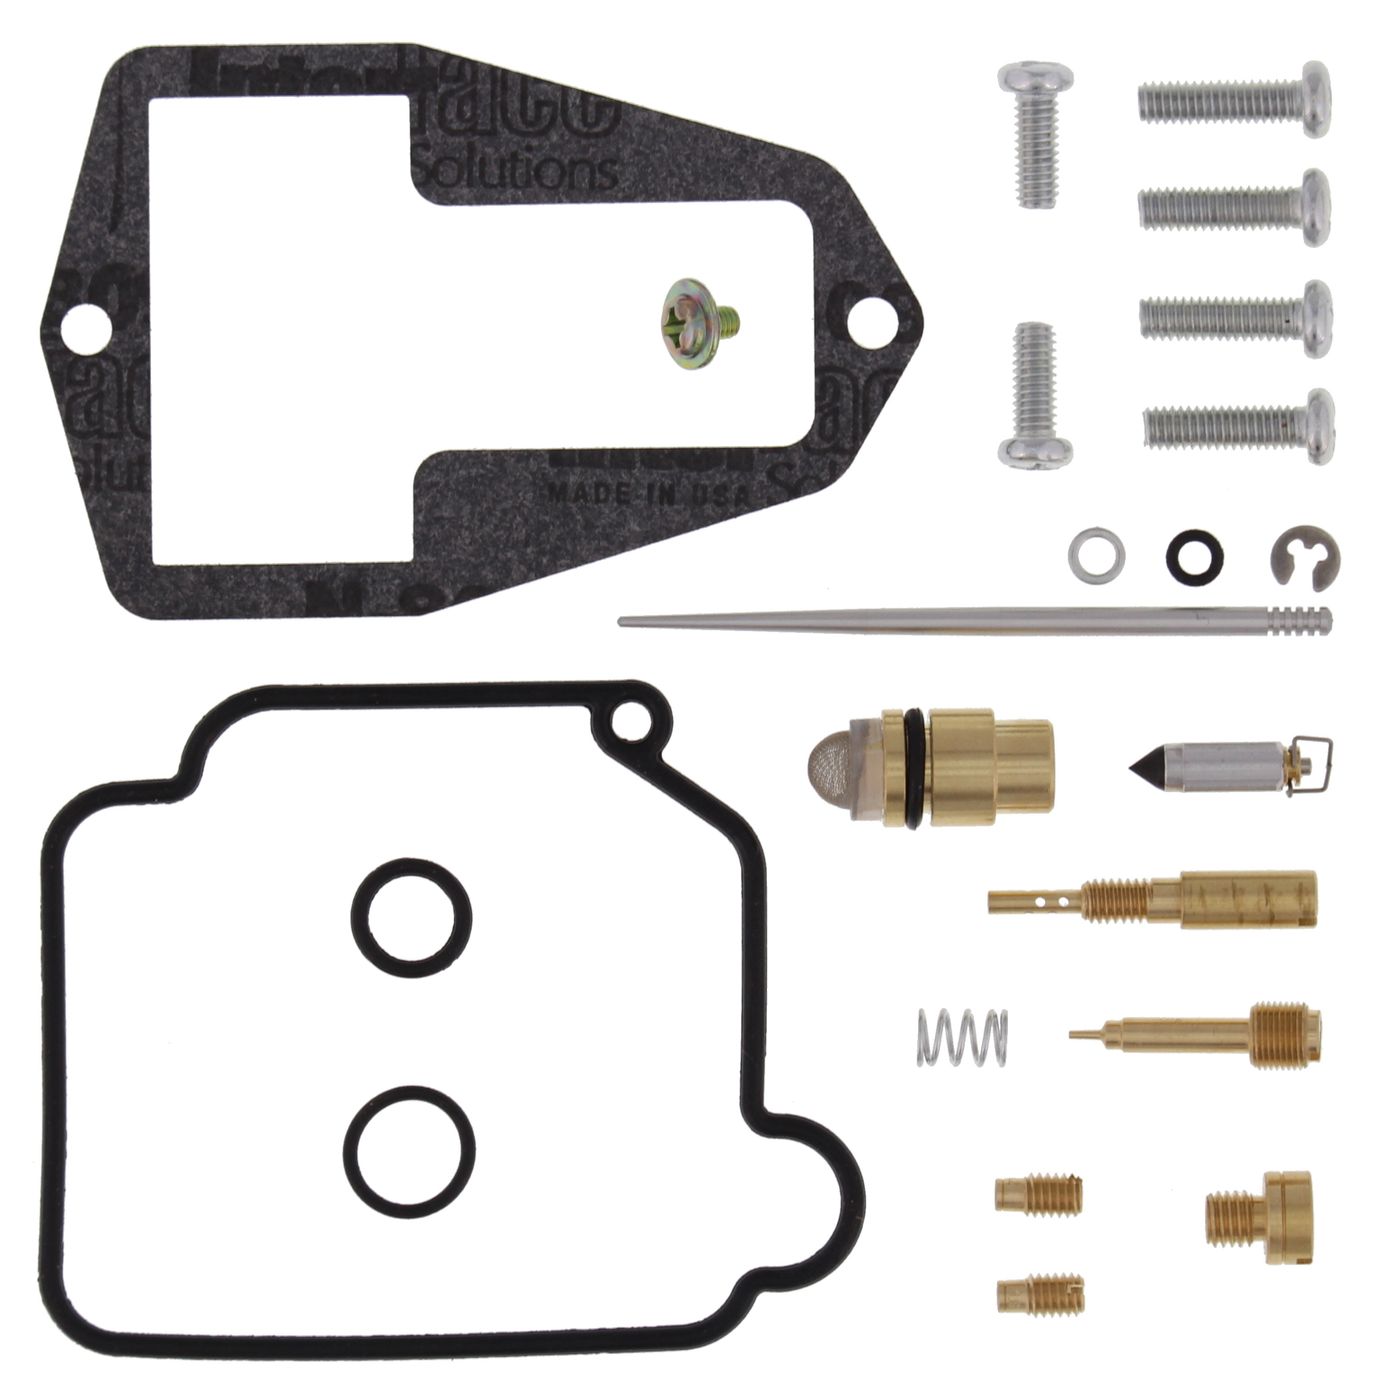 Wrp Carb Repair Kits - WRP261129 image